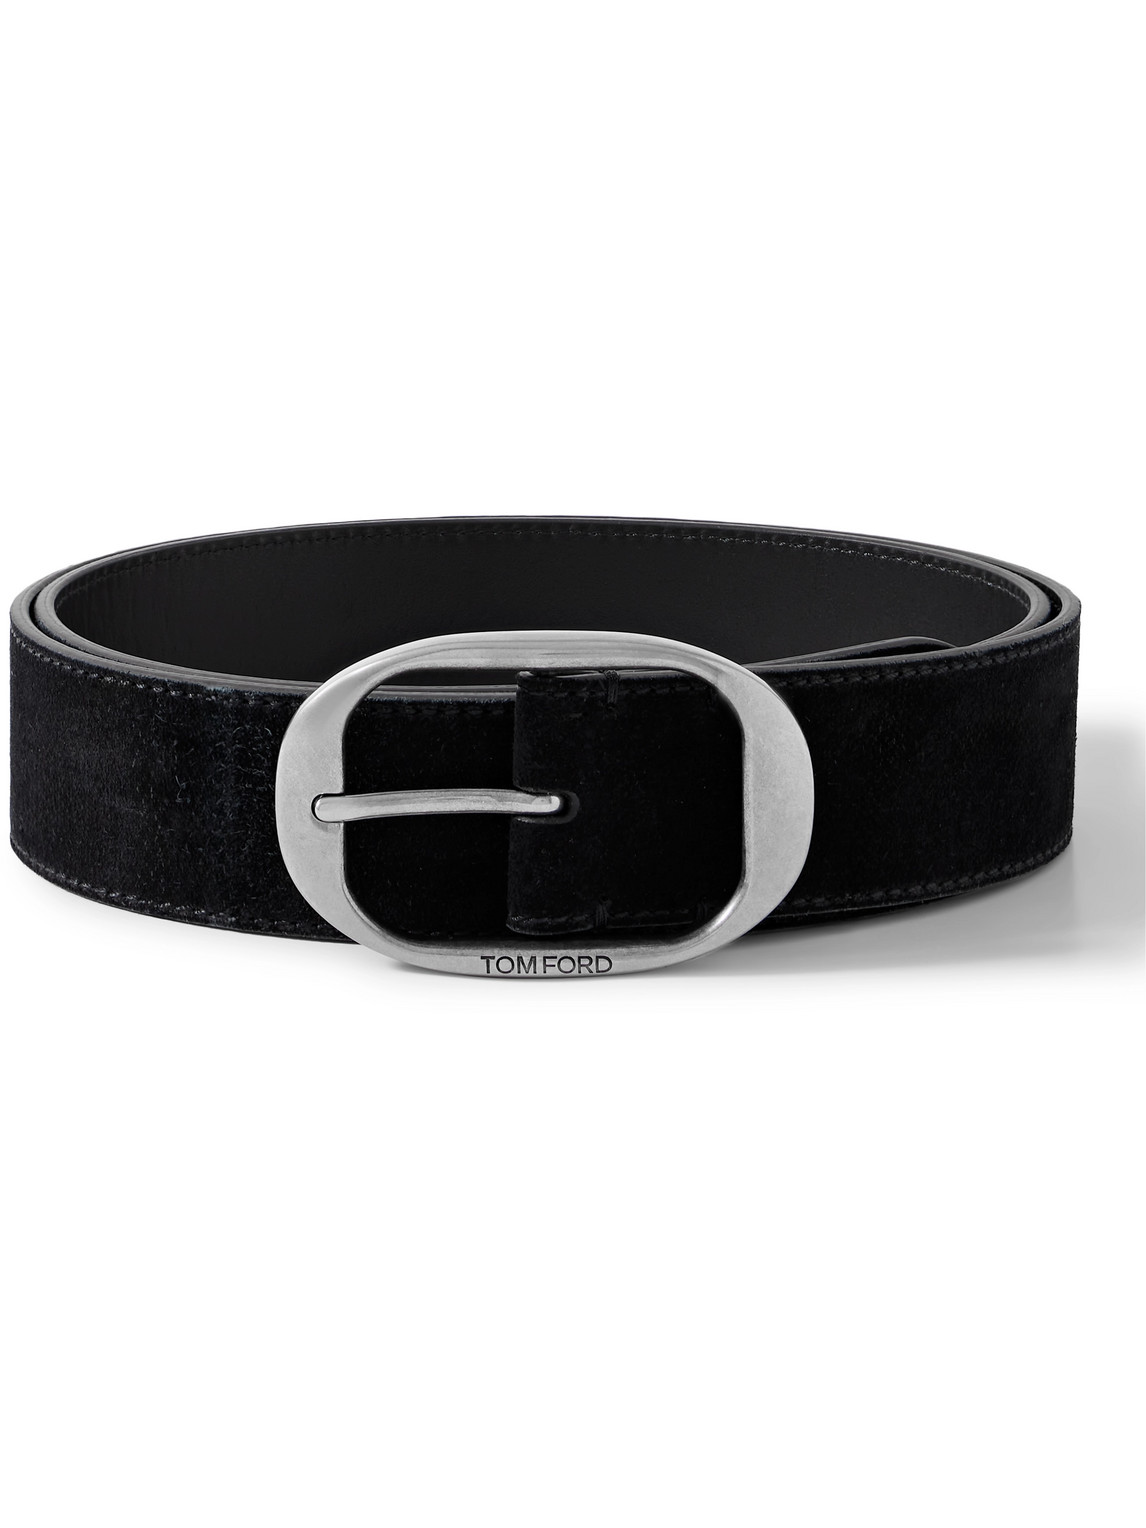 Tom Ford 4cm Suede Belt In Black